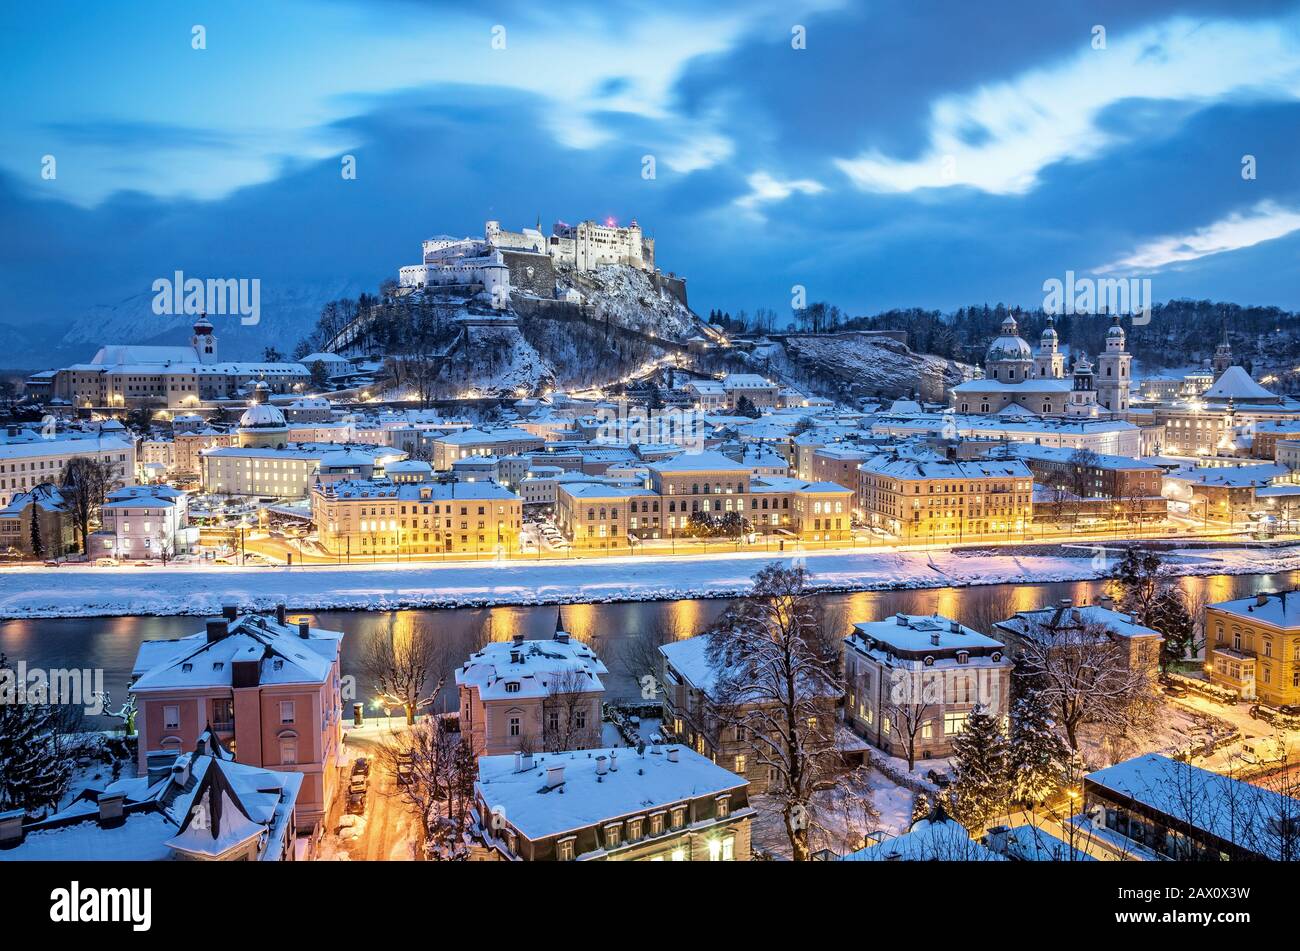 Klassischer Luftbild der historischen Stadt Salzburg mit berühmter Festung Hohensalzburg und Salzach im Winter beleuchtet, Salzburger Land, Österreich Stockfoto